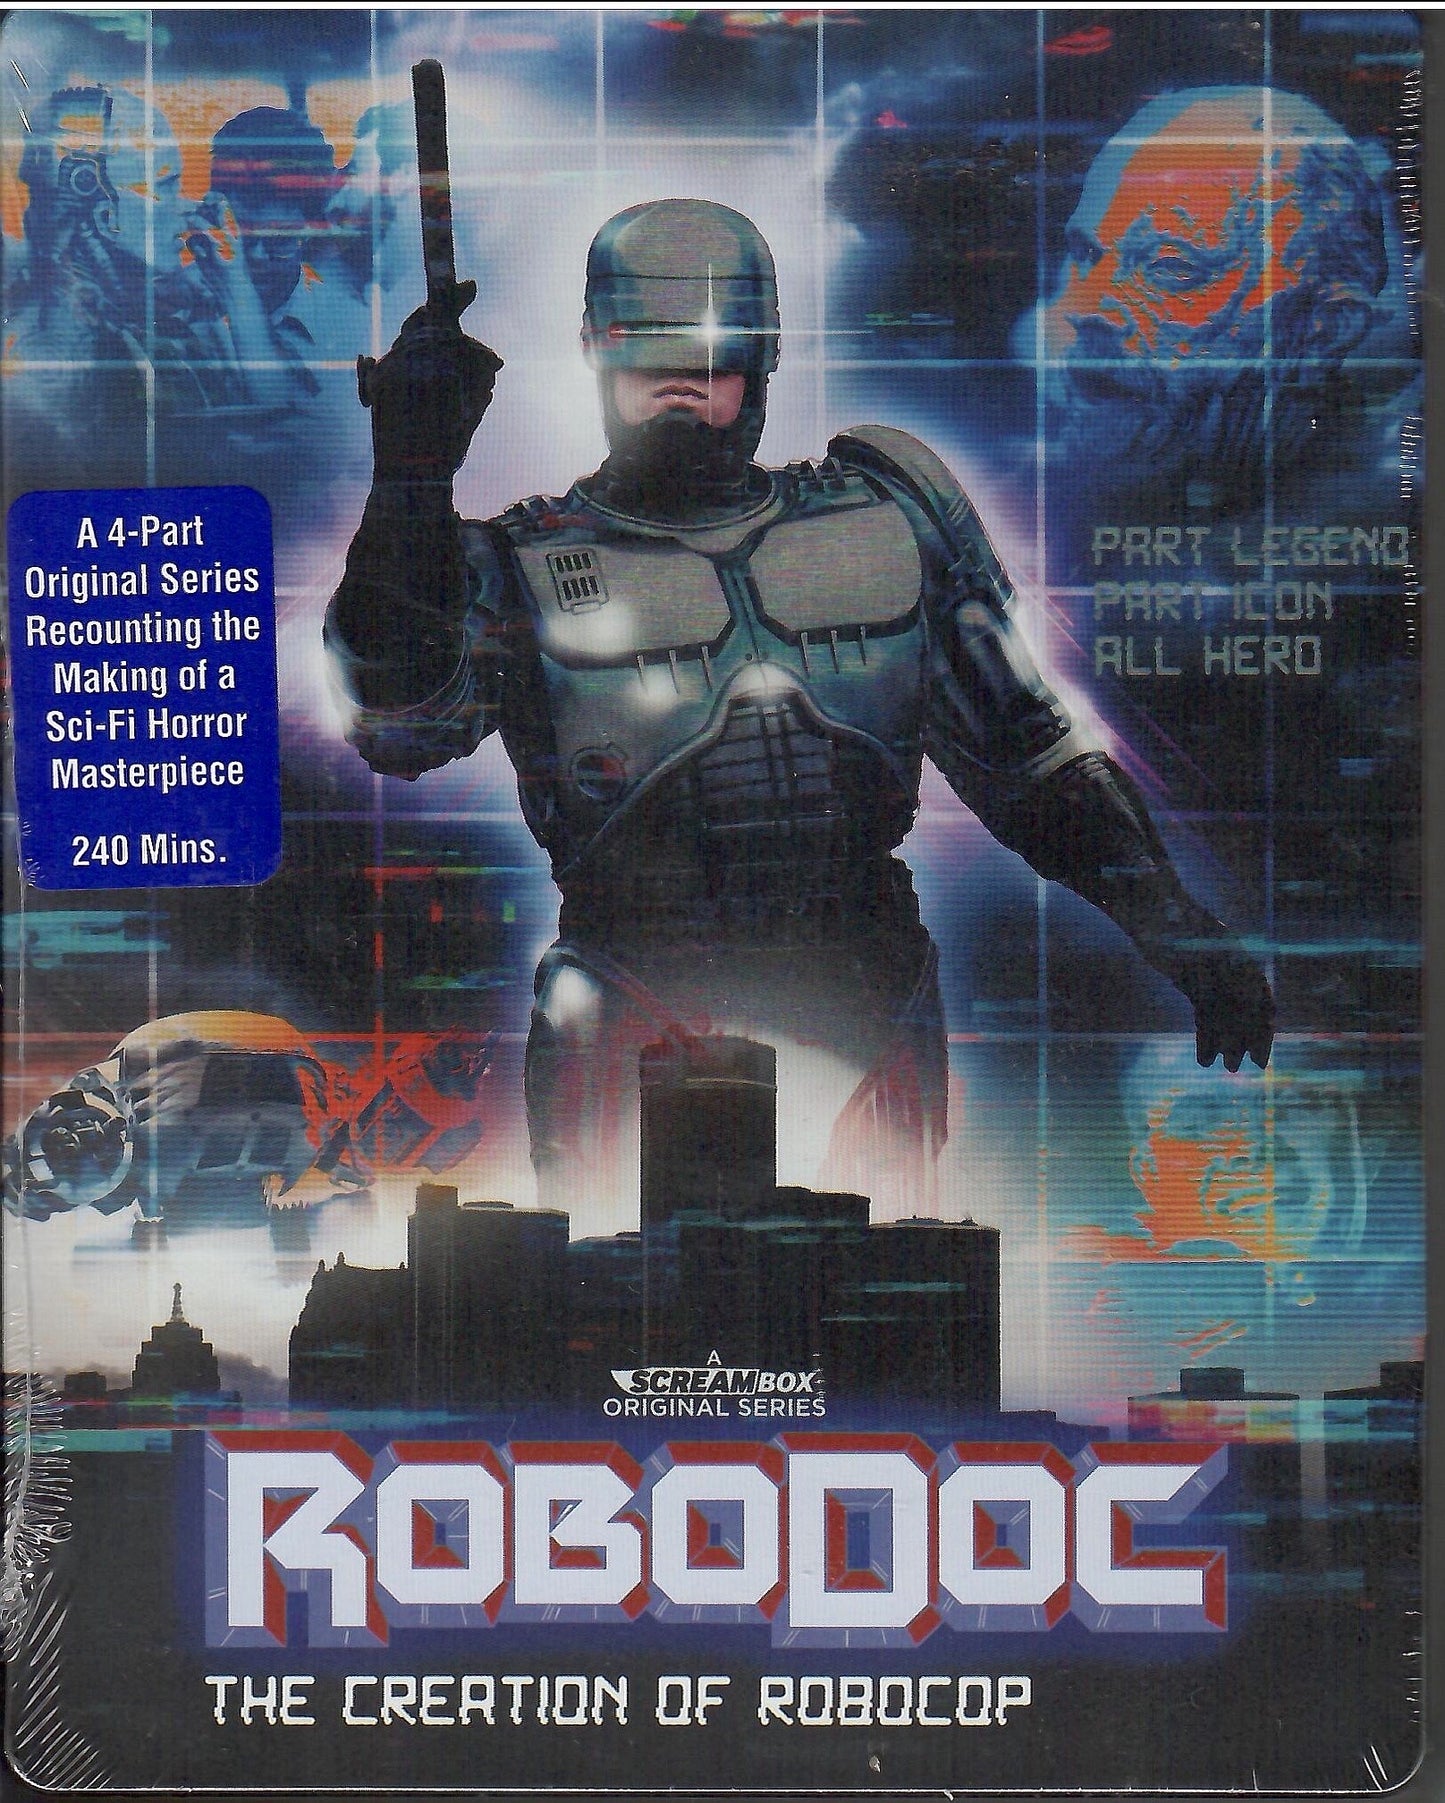 RoboDoc: The Creation of Robocop SteelBook (Exclusive)